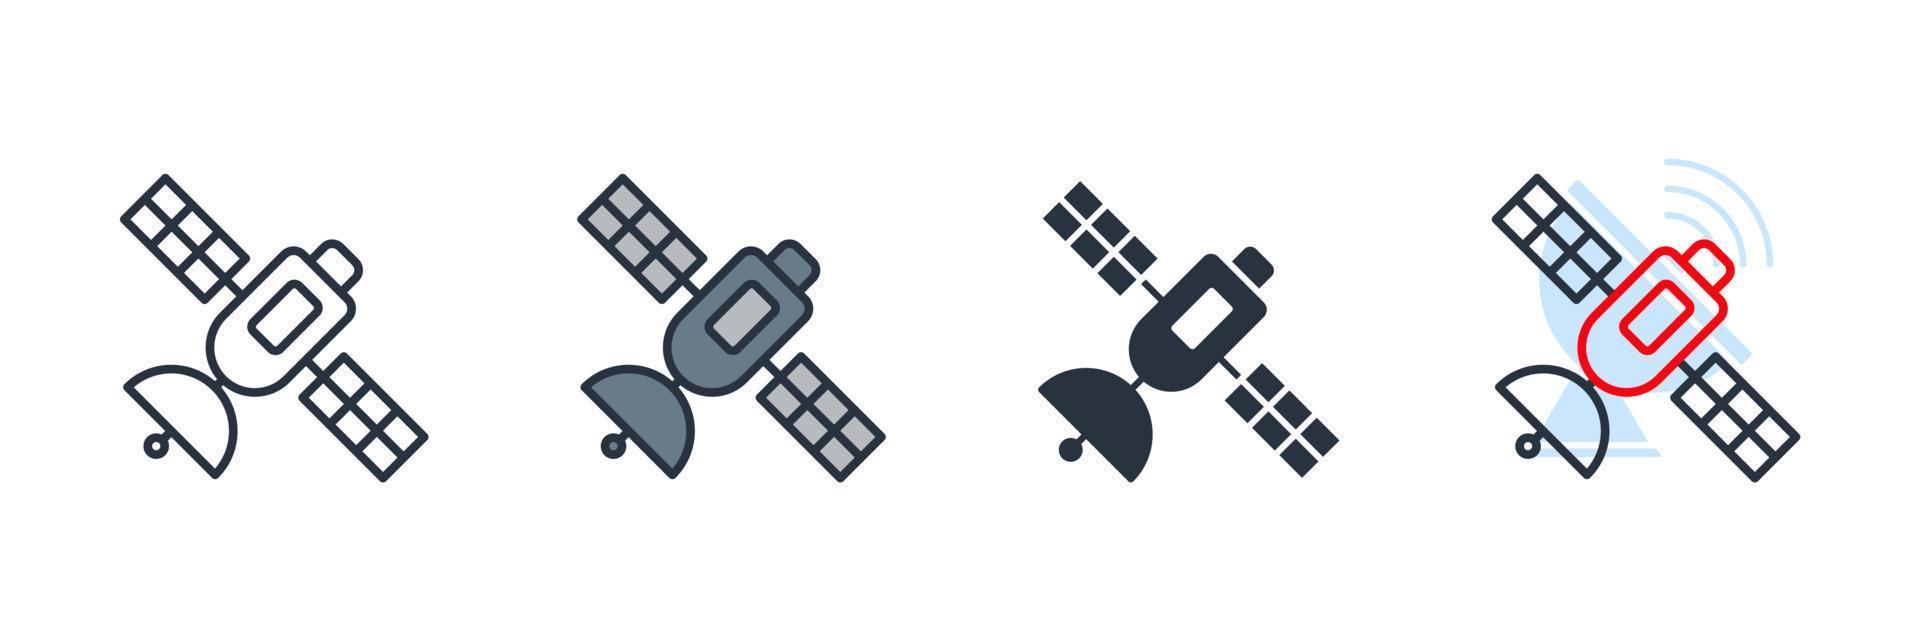 satellit ikon logotyp vektor illustration. broadcasting symbol mall för grafisk och webbdesign samling